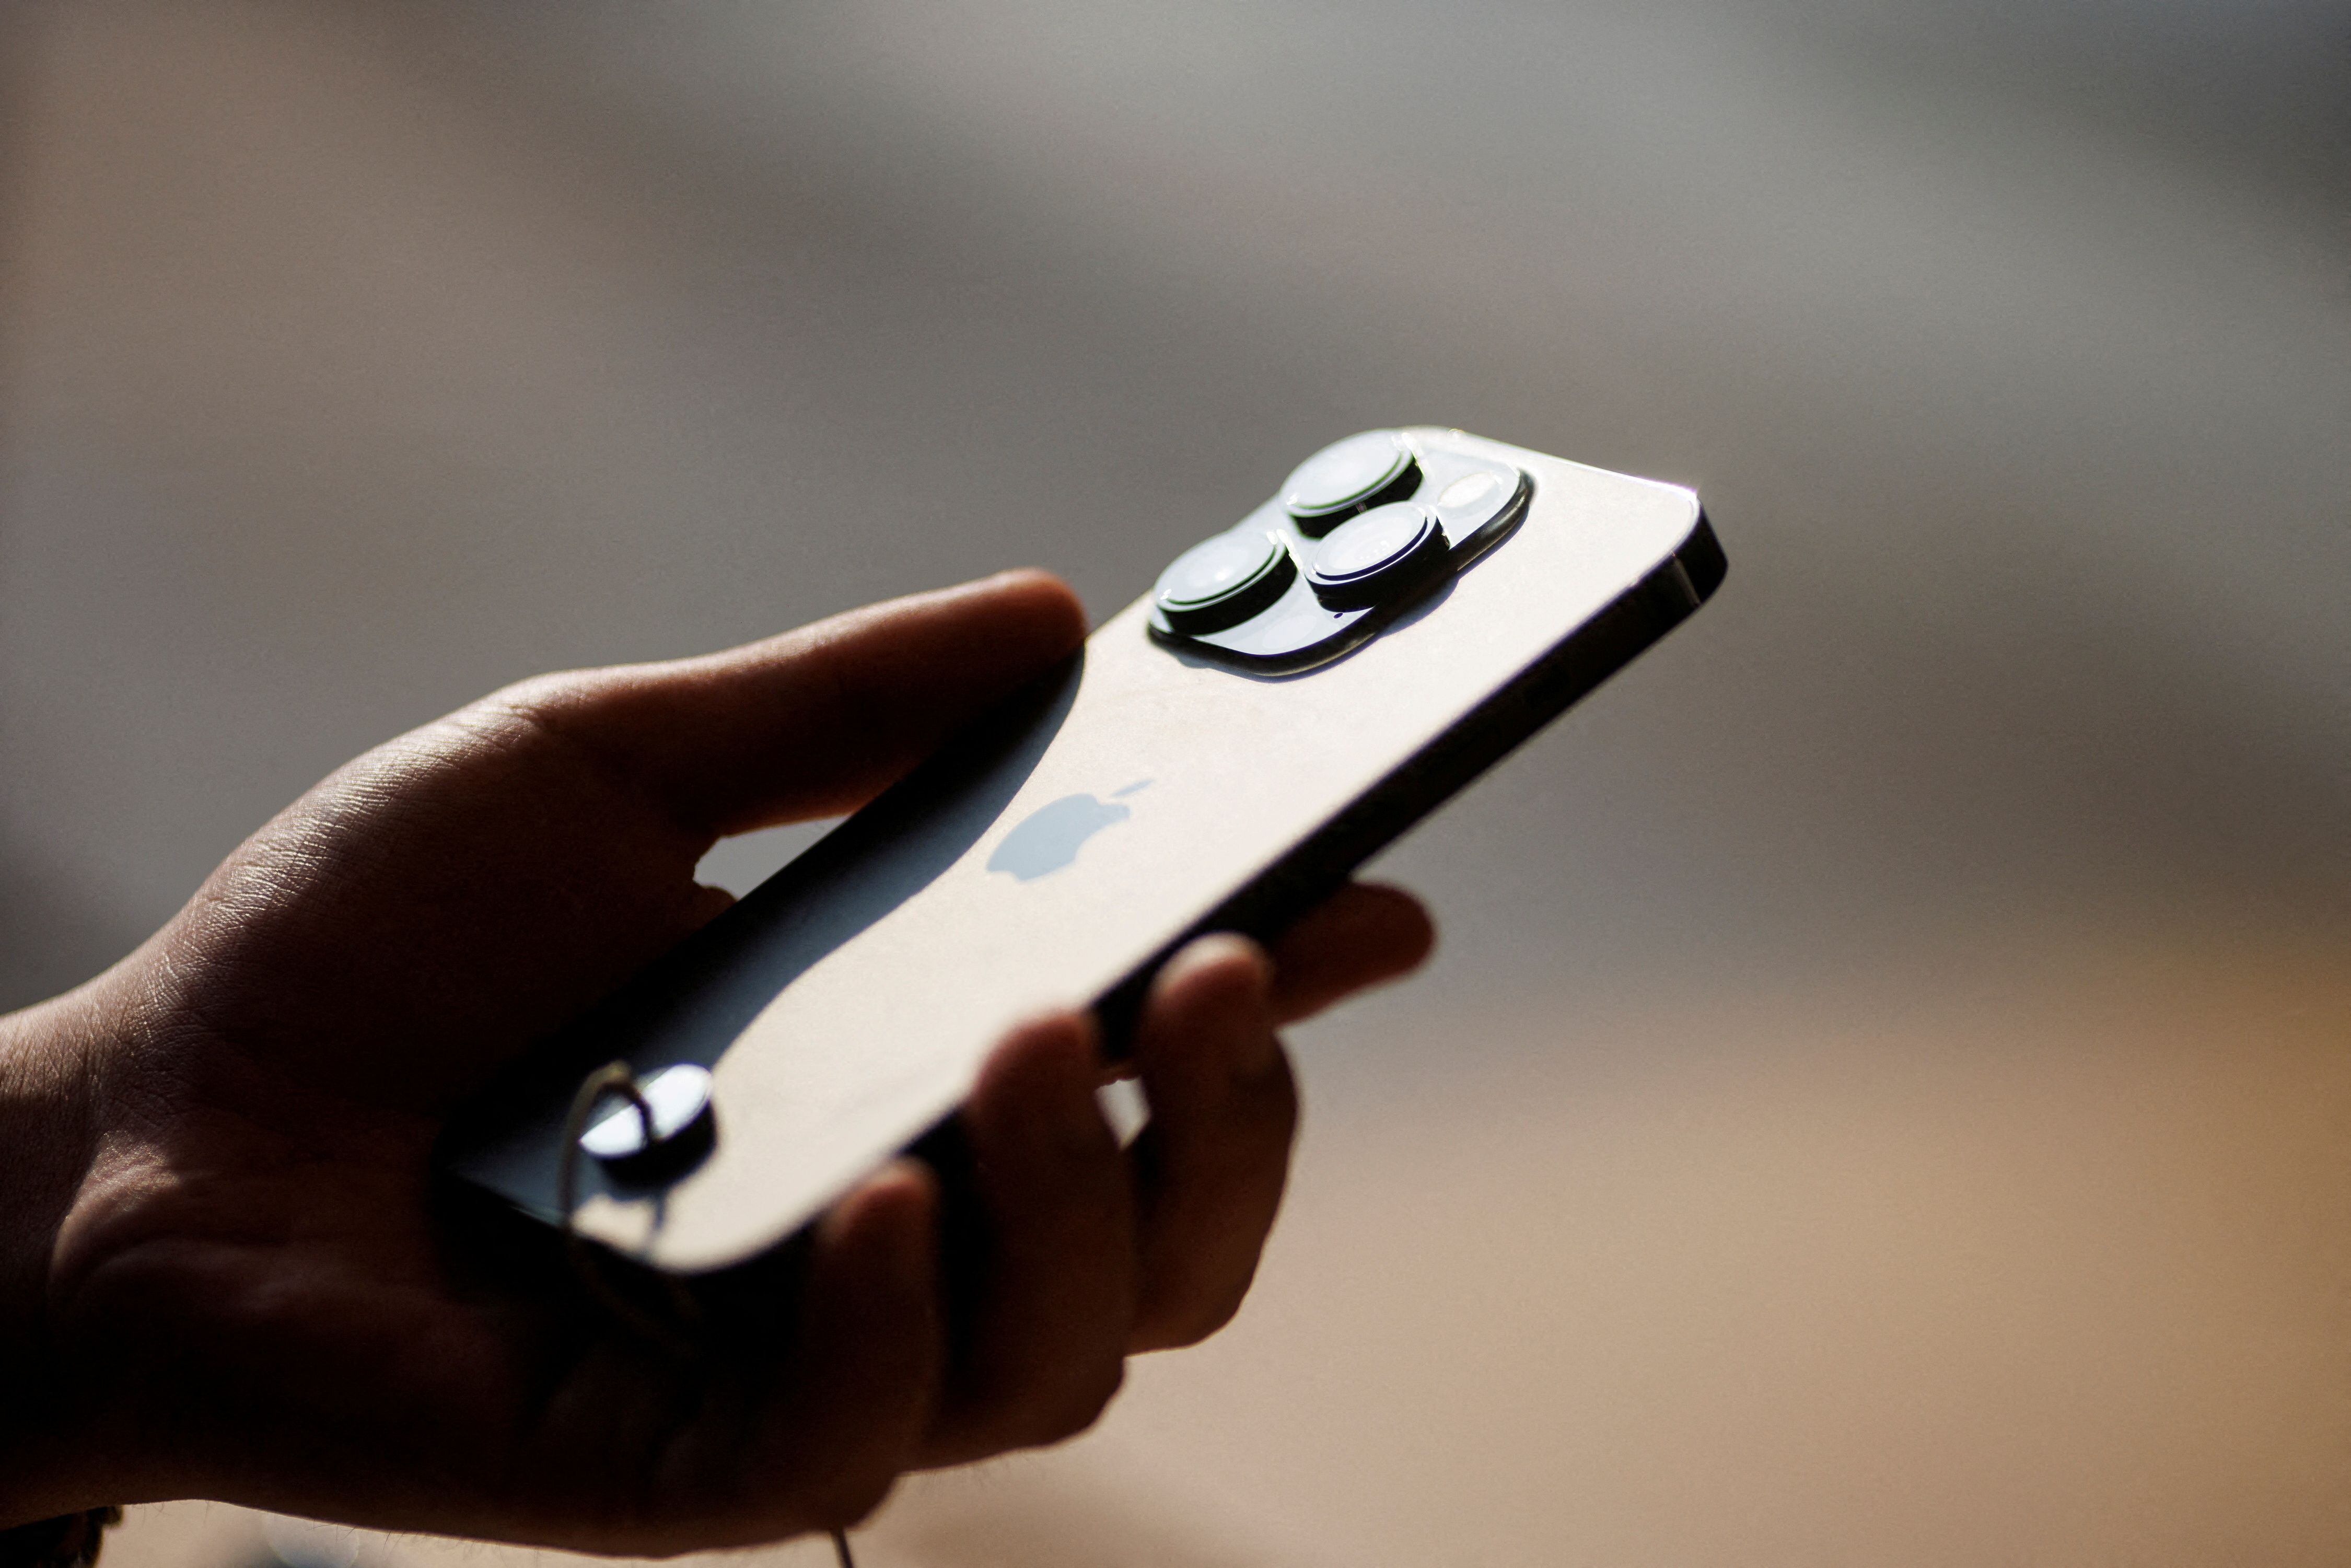 Los modelos Pro del iPhone 15 incluirán un nuevo tipo de lente a las cámaras de los celulares de Apple llamado “periscópico”. REUTERS/Thomas Peter/File Photo